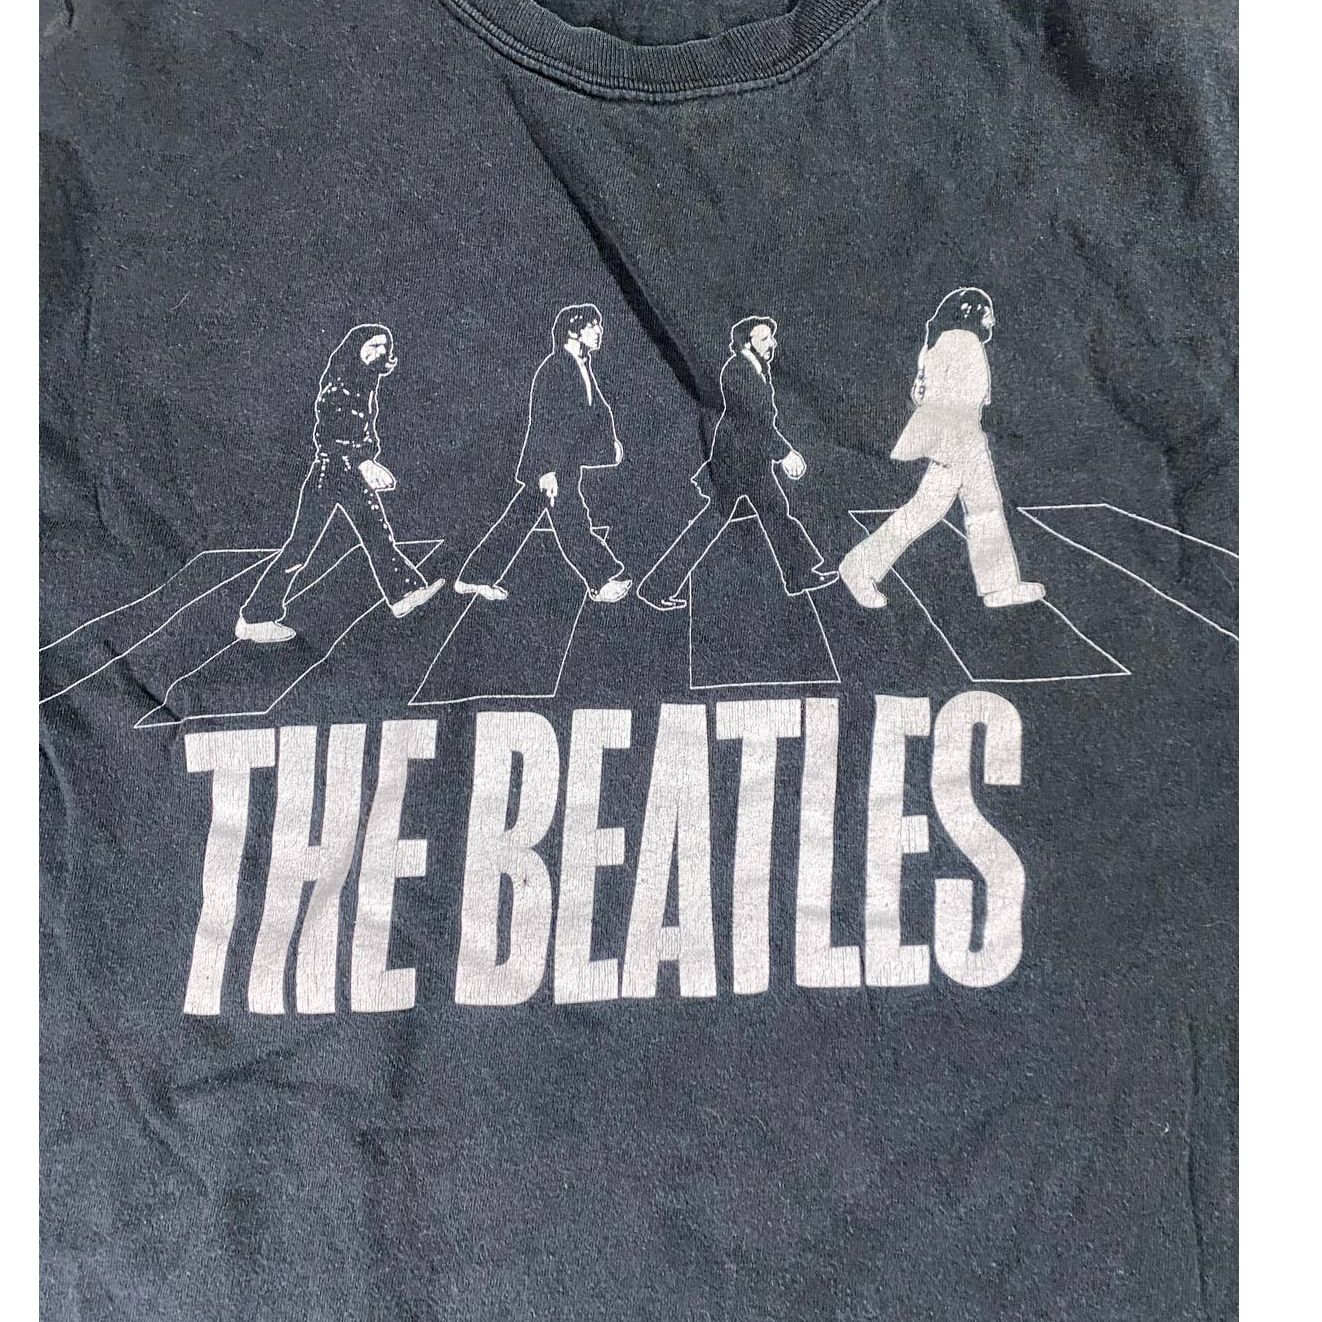 Vintage Beatles 2005 Abbey Road Black Shirt Men's L Size US L / EU 52-54 / 3 - 2 Preview